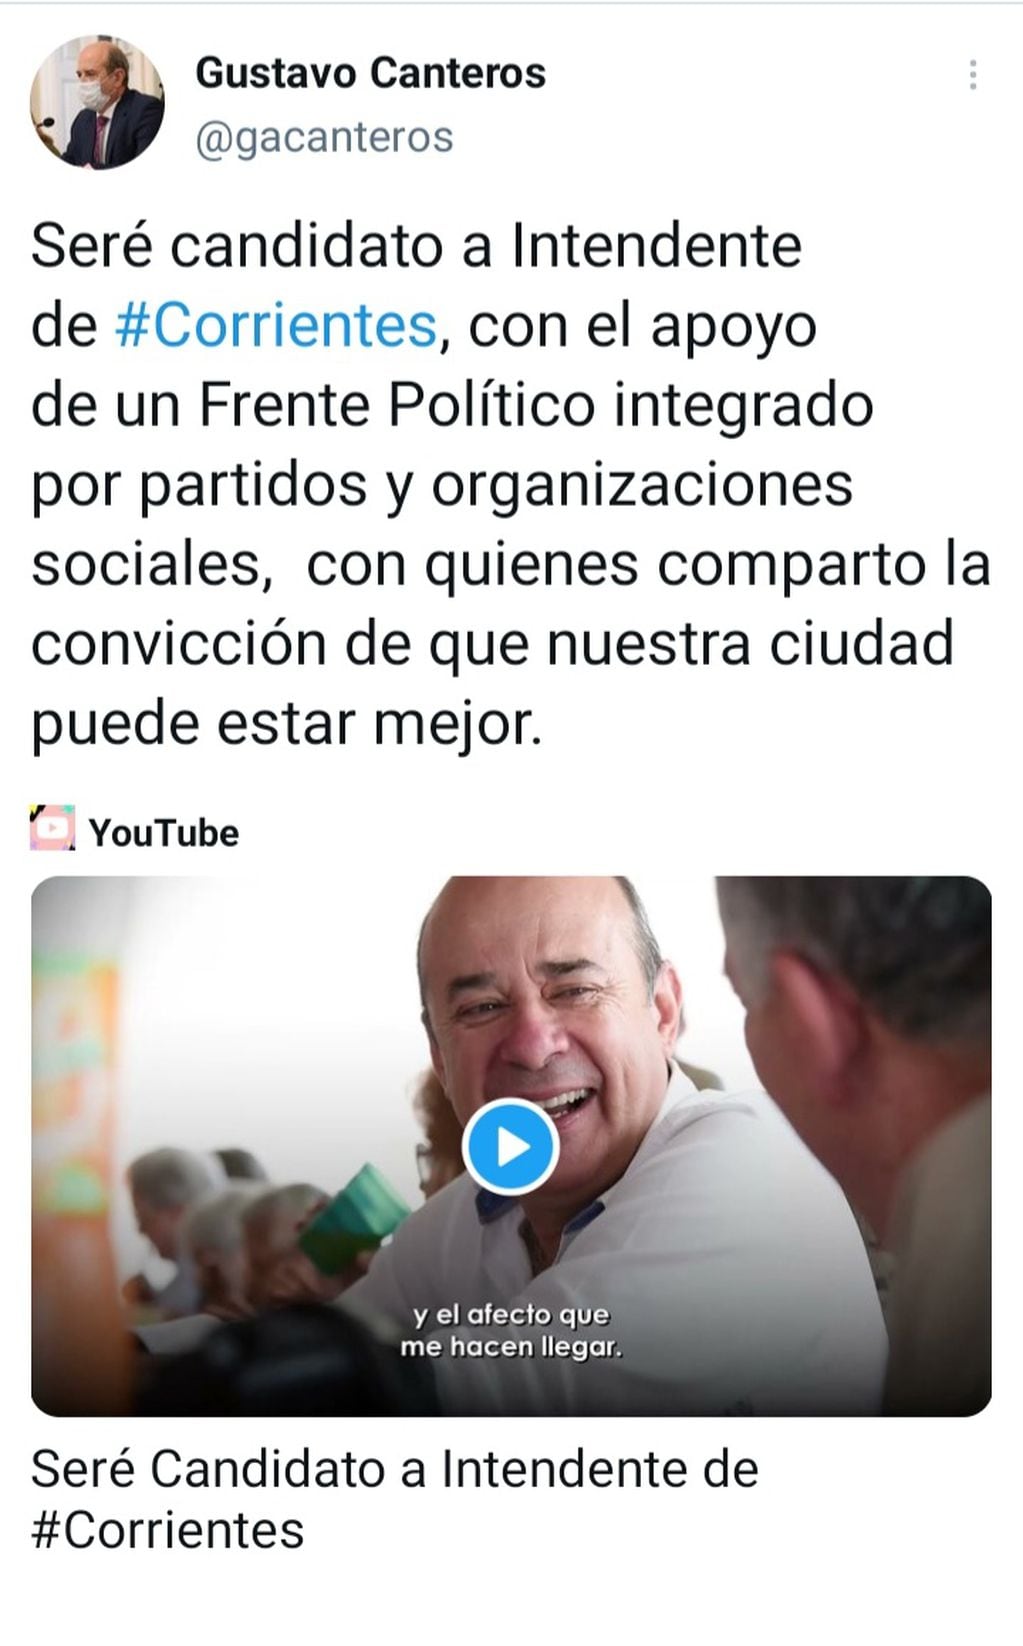 Gustavo Canteros será candidato a intendente en el Capital por el frente opositor (Frente Corrientes de Todos), mientras seguirá siendo vicegobernador por el oficialismo radical.